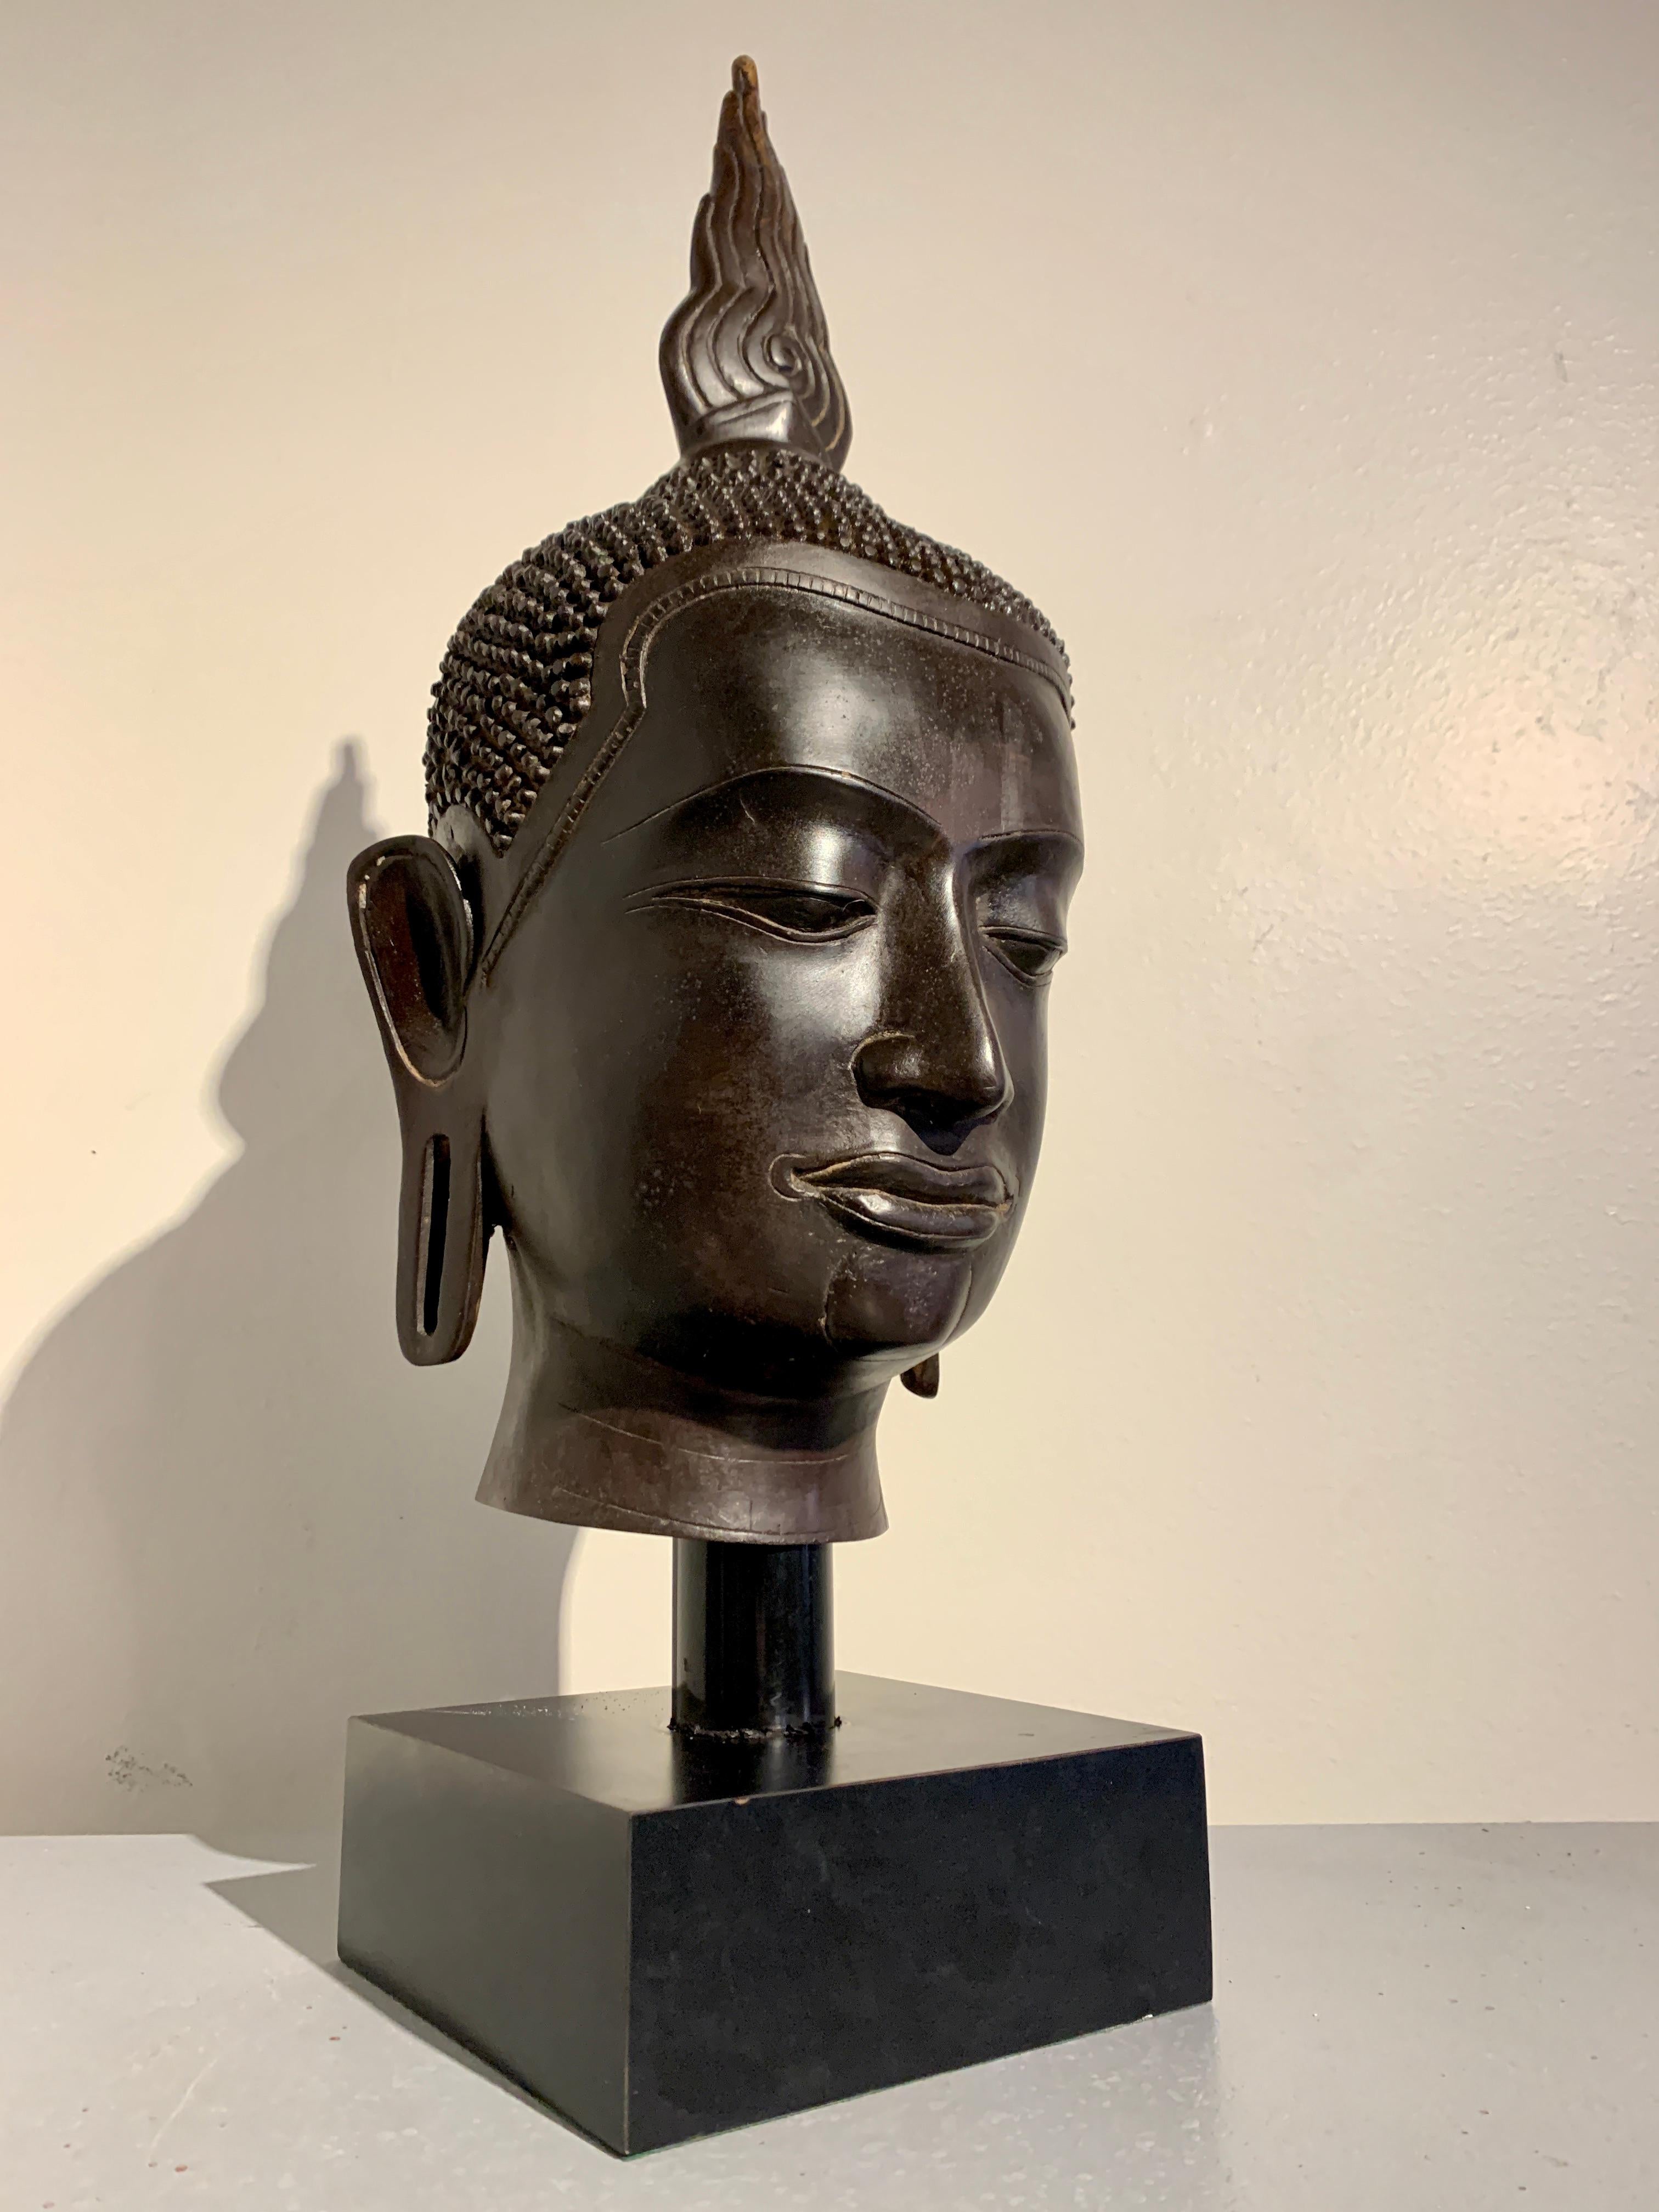 Ein großer und beeindruckender Vintage-Buddha-Kopf aus thailändischer Bronze, U-Thong-Stil, 1970er Jahre, Thailand.

Der überlebensgroße Kopf ist wunderschön mit raffinierten Details gegossen. Das Gesicht des Buddha ist schlank, mit kantigen Zügen.